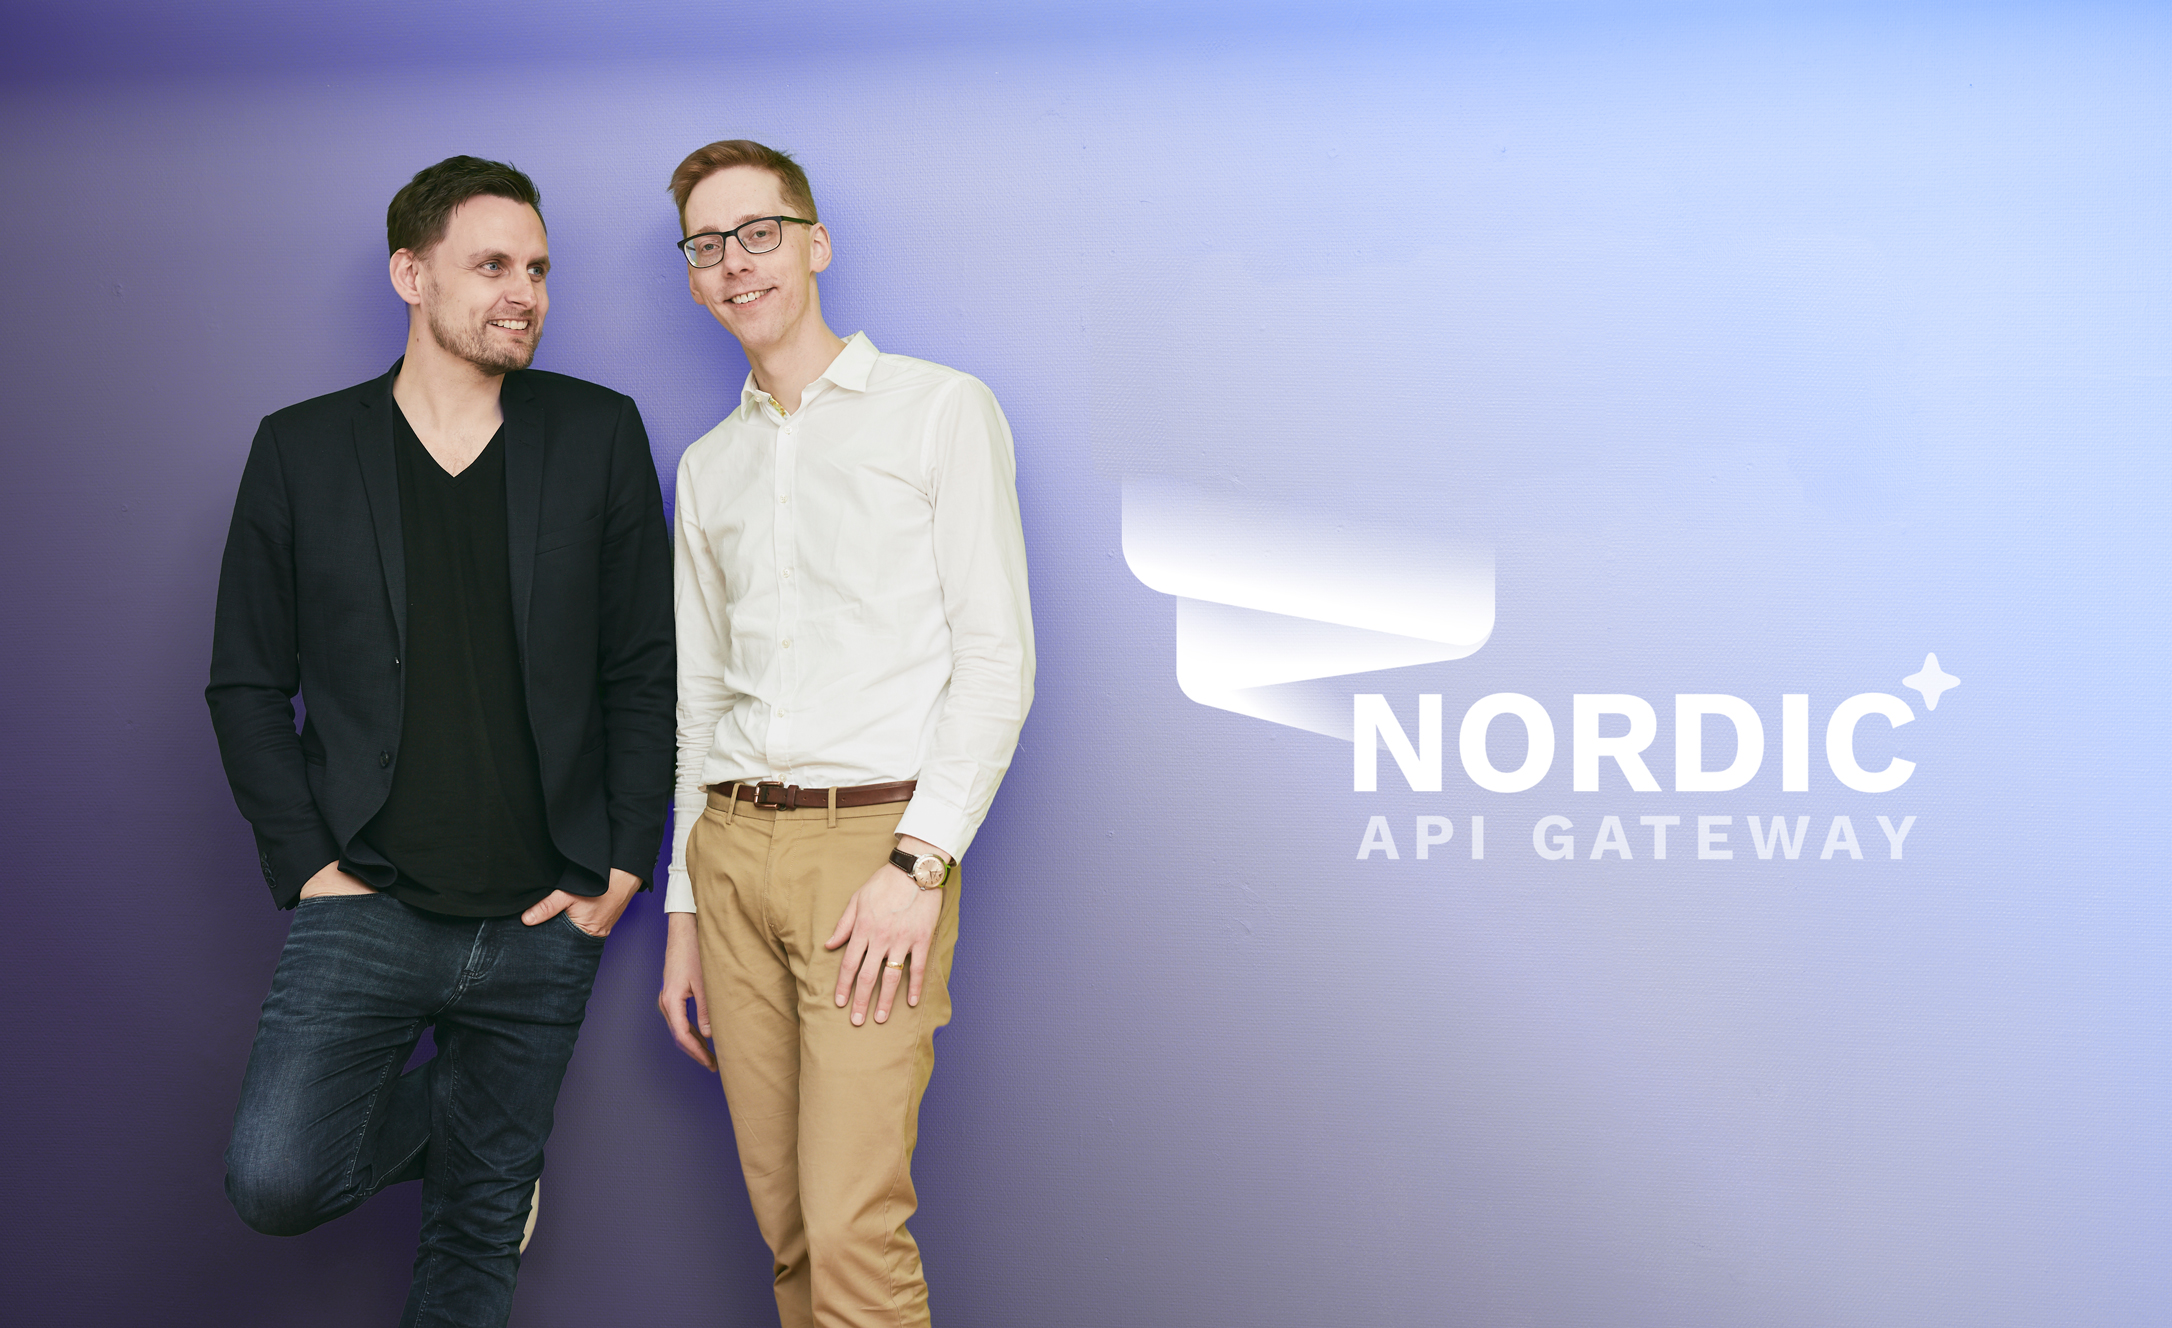 Rune Mai og Guðmundur Hreiðarsson, stiftere af Spiir og Nordic API gateway.